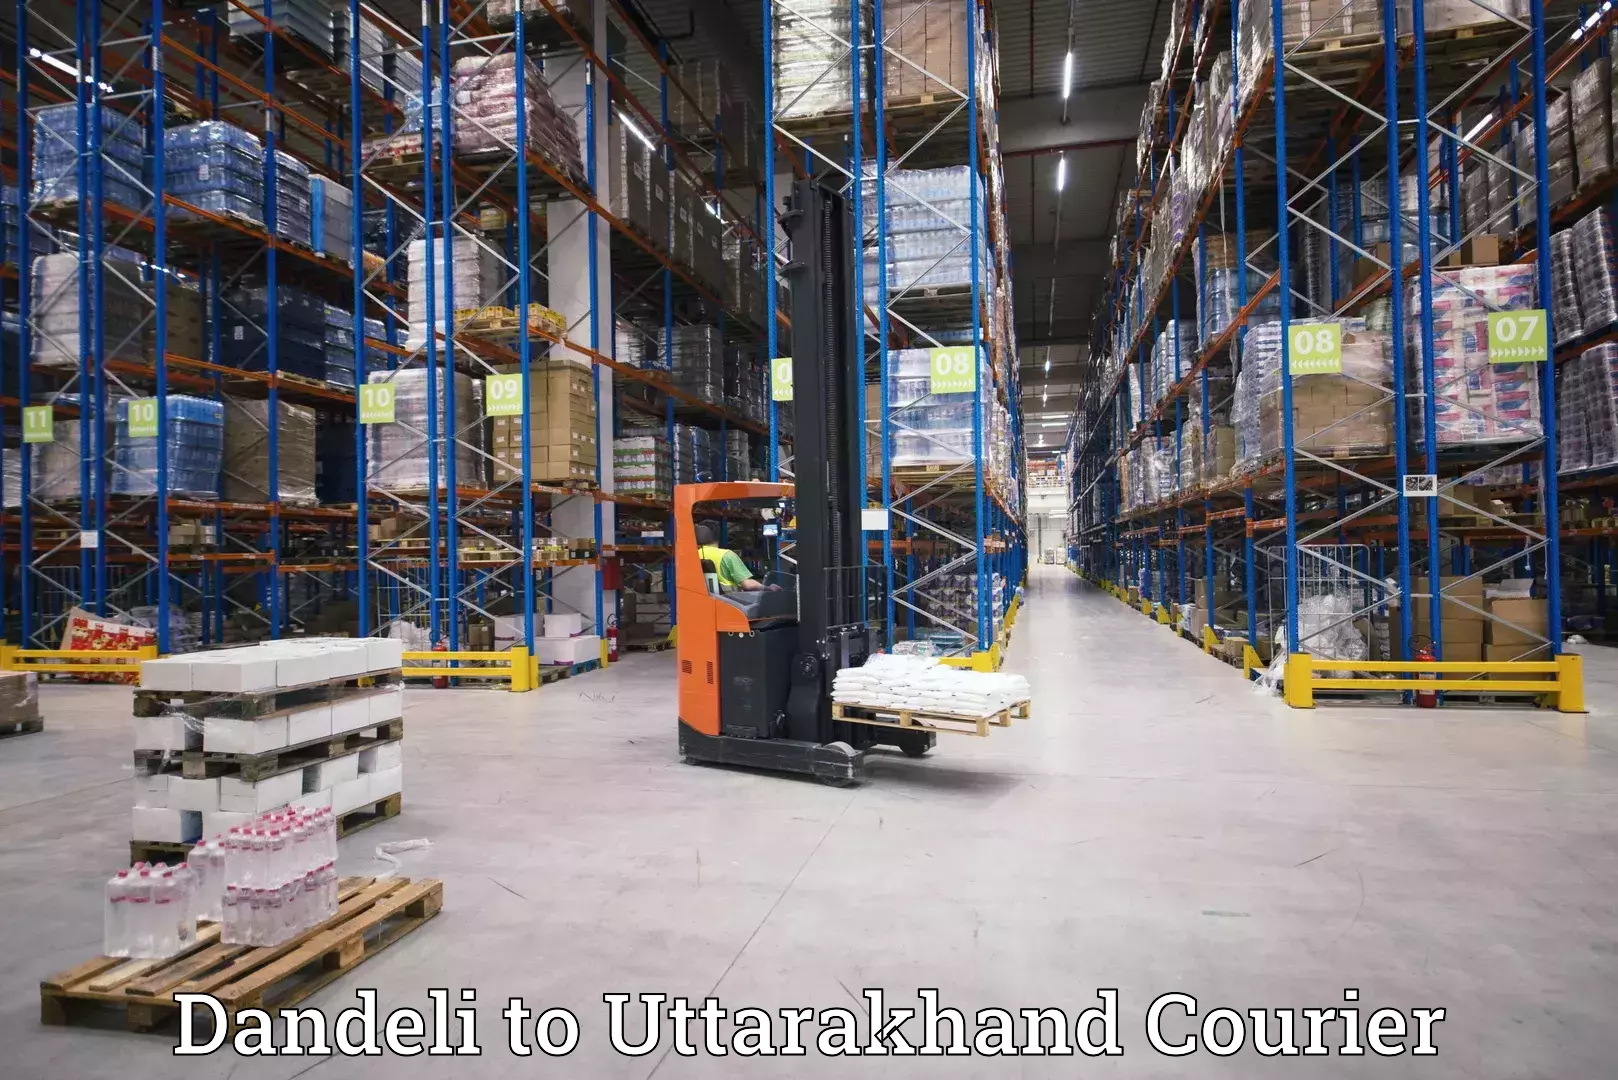 Multi-city courier Dandeli to Uttarakhand